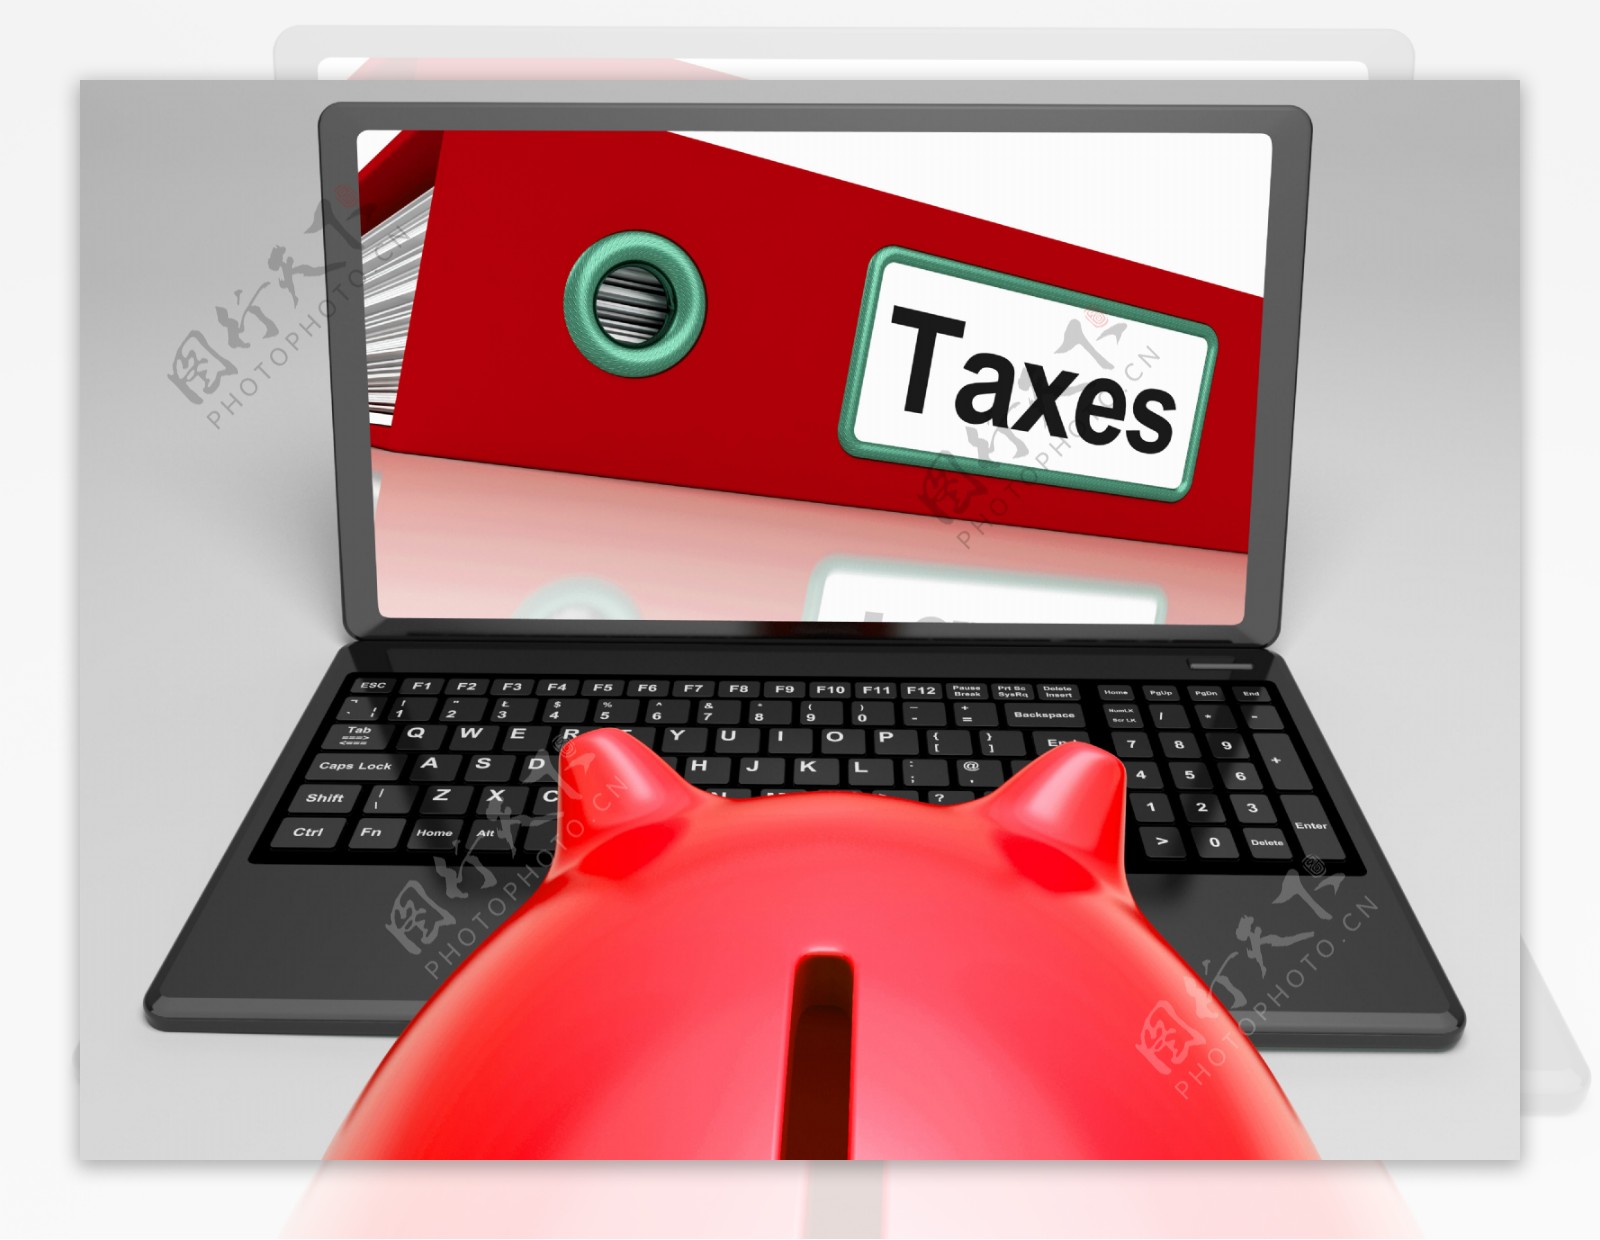 税收文件在笔记本电脑显示税收